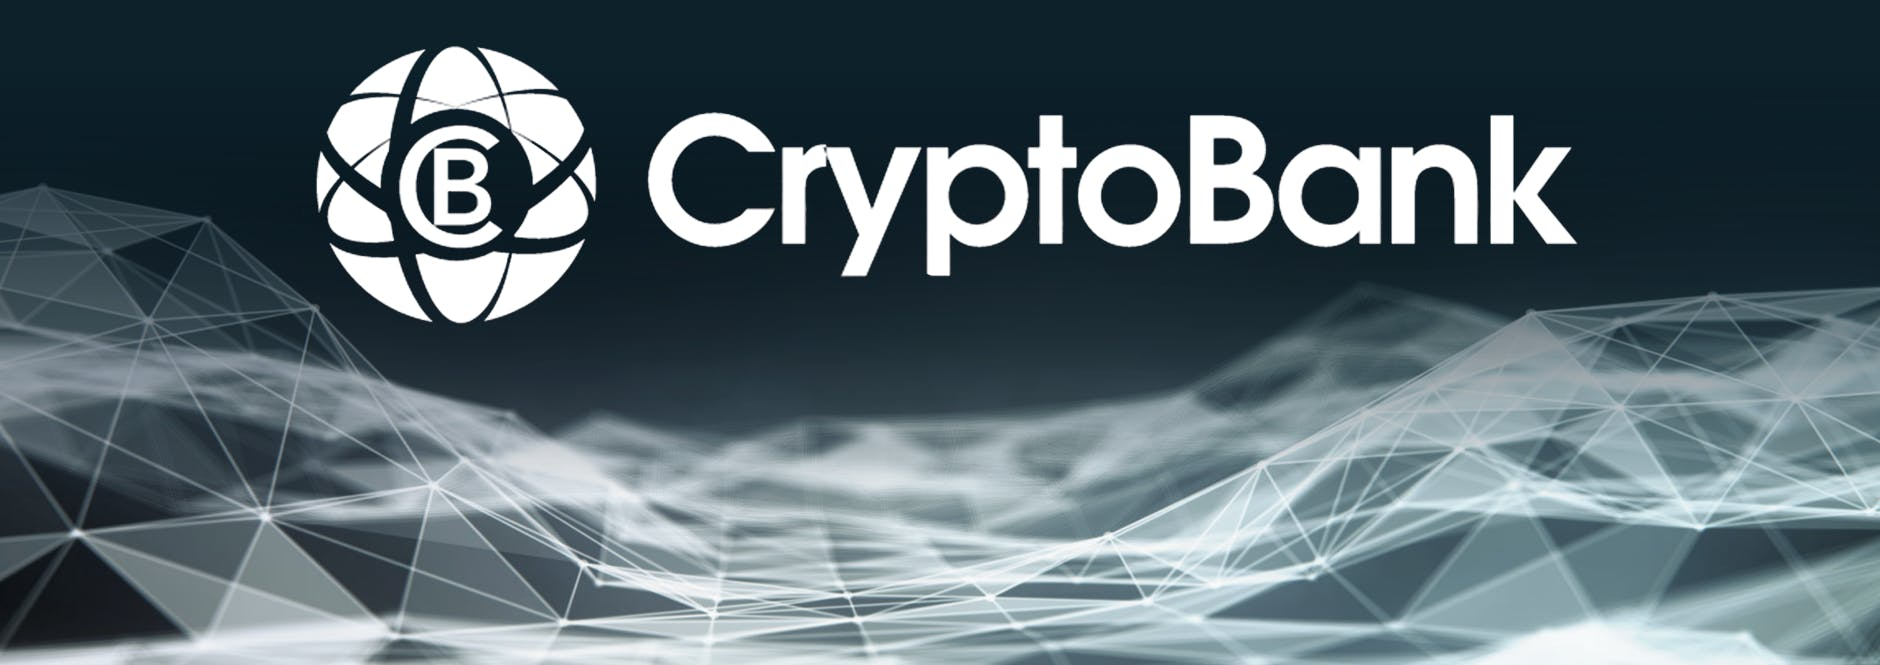 best crypto bank ico